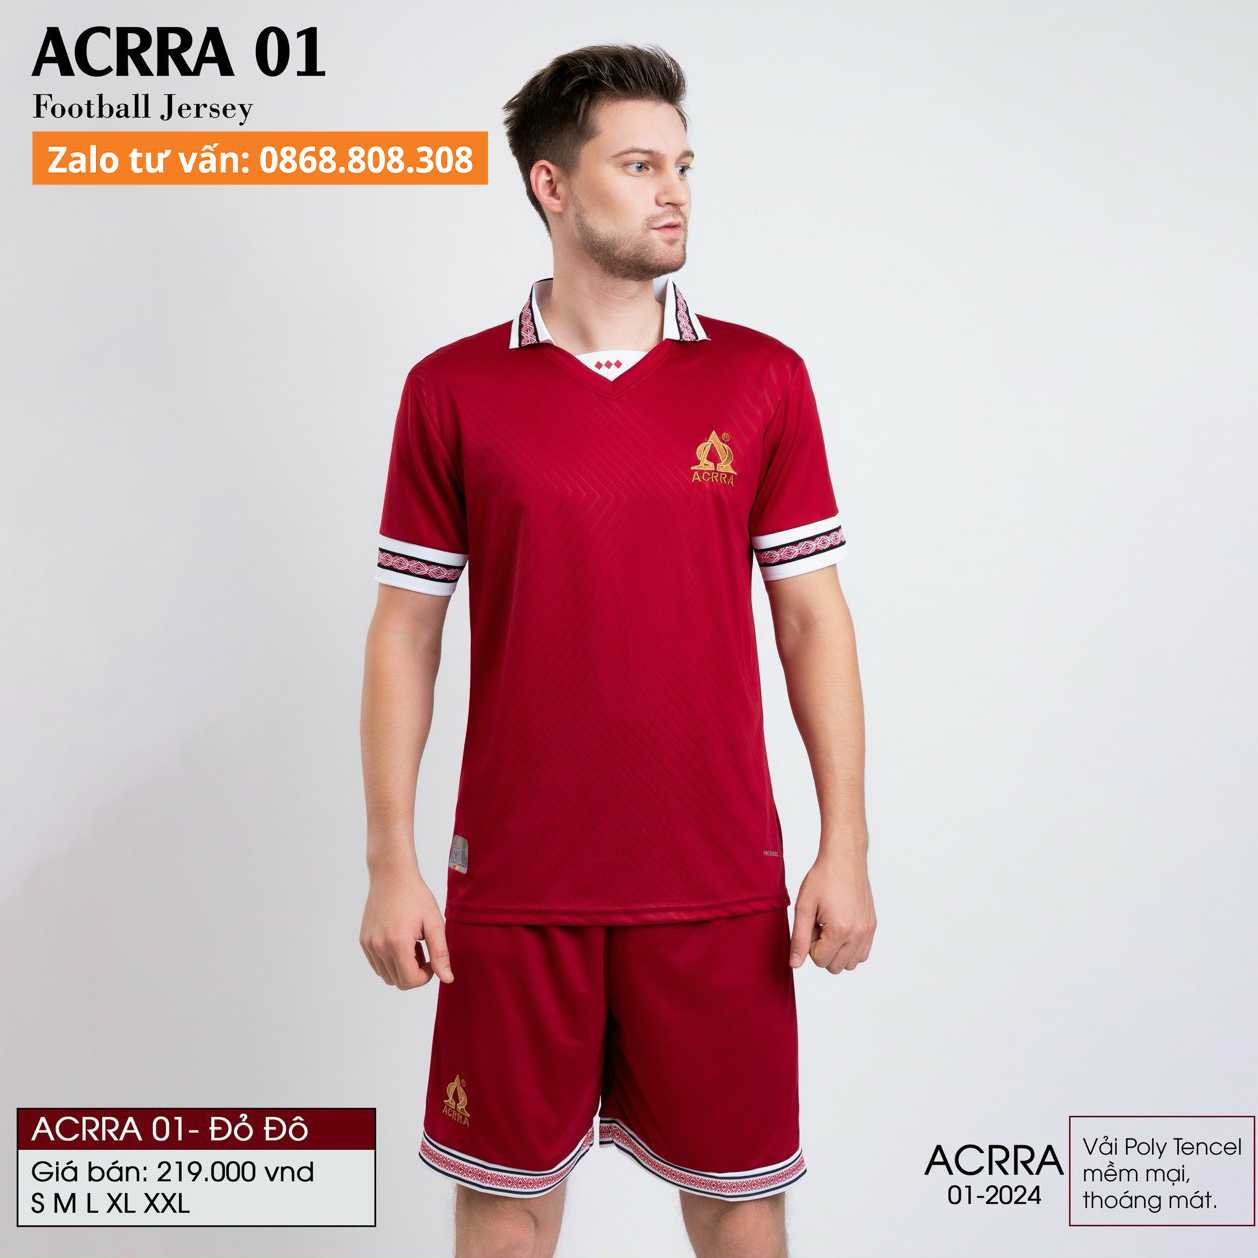 Bộ quần áo thể thao bóng đá ACRRA 01 Kiểu dáng có cổ vải Polo Tencel dập chìm nổi hoạ tiết nhiều màu